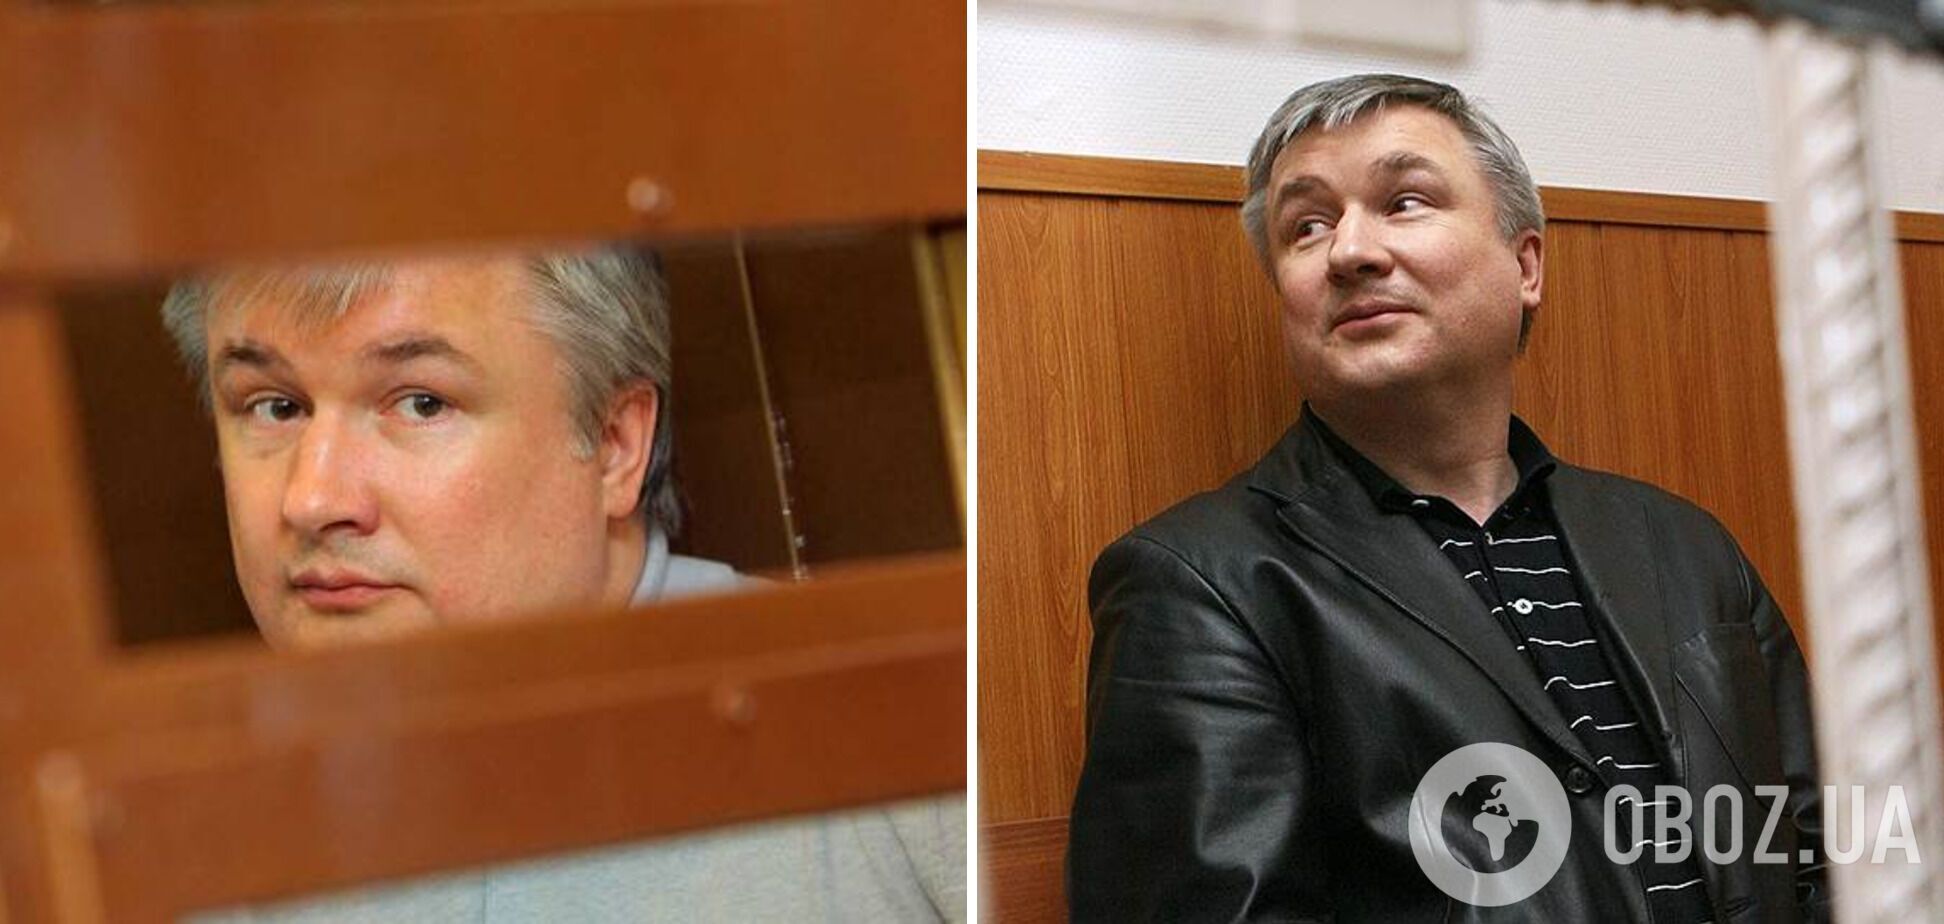 Игорь Изместьев получил пожизненный срок.